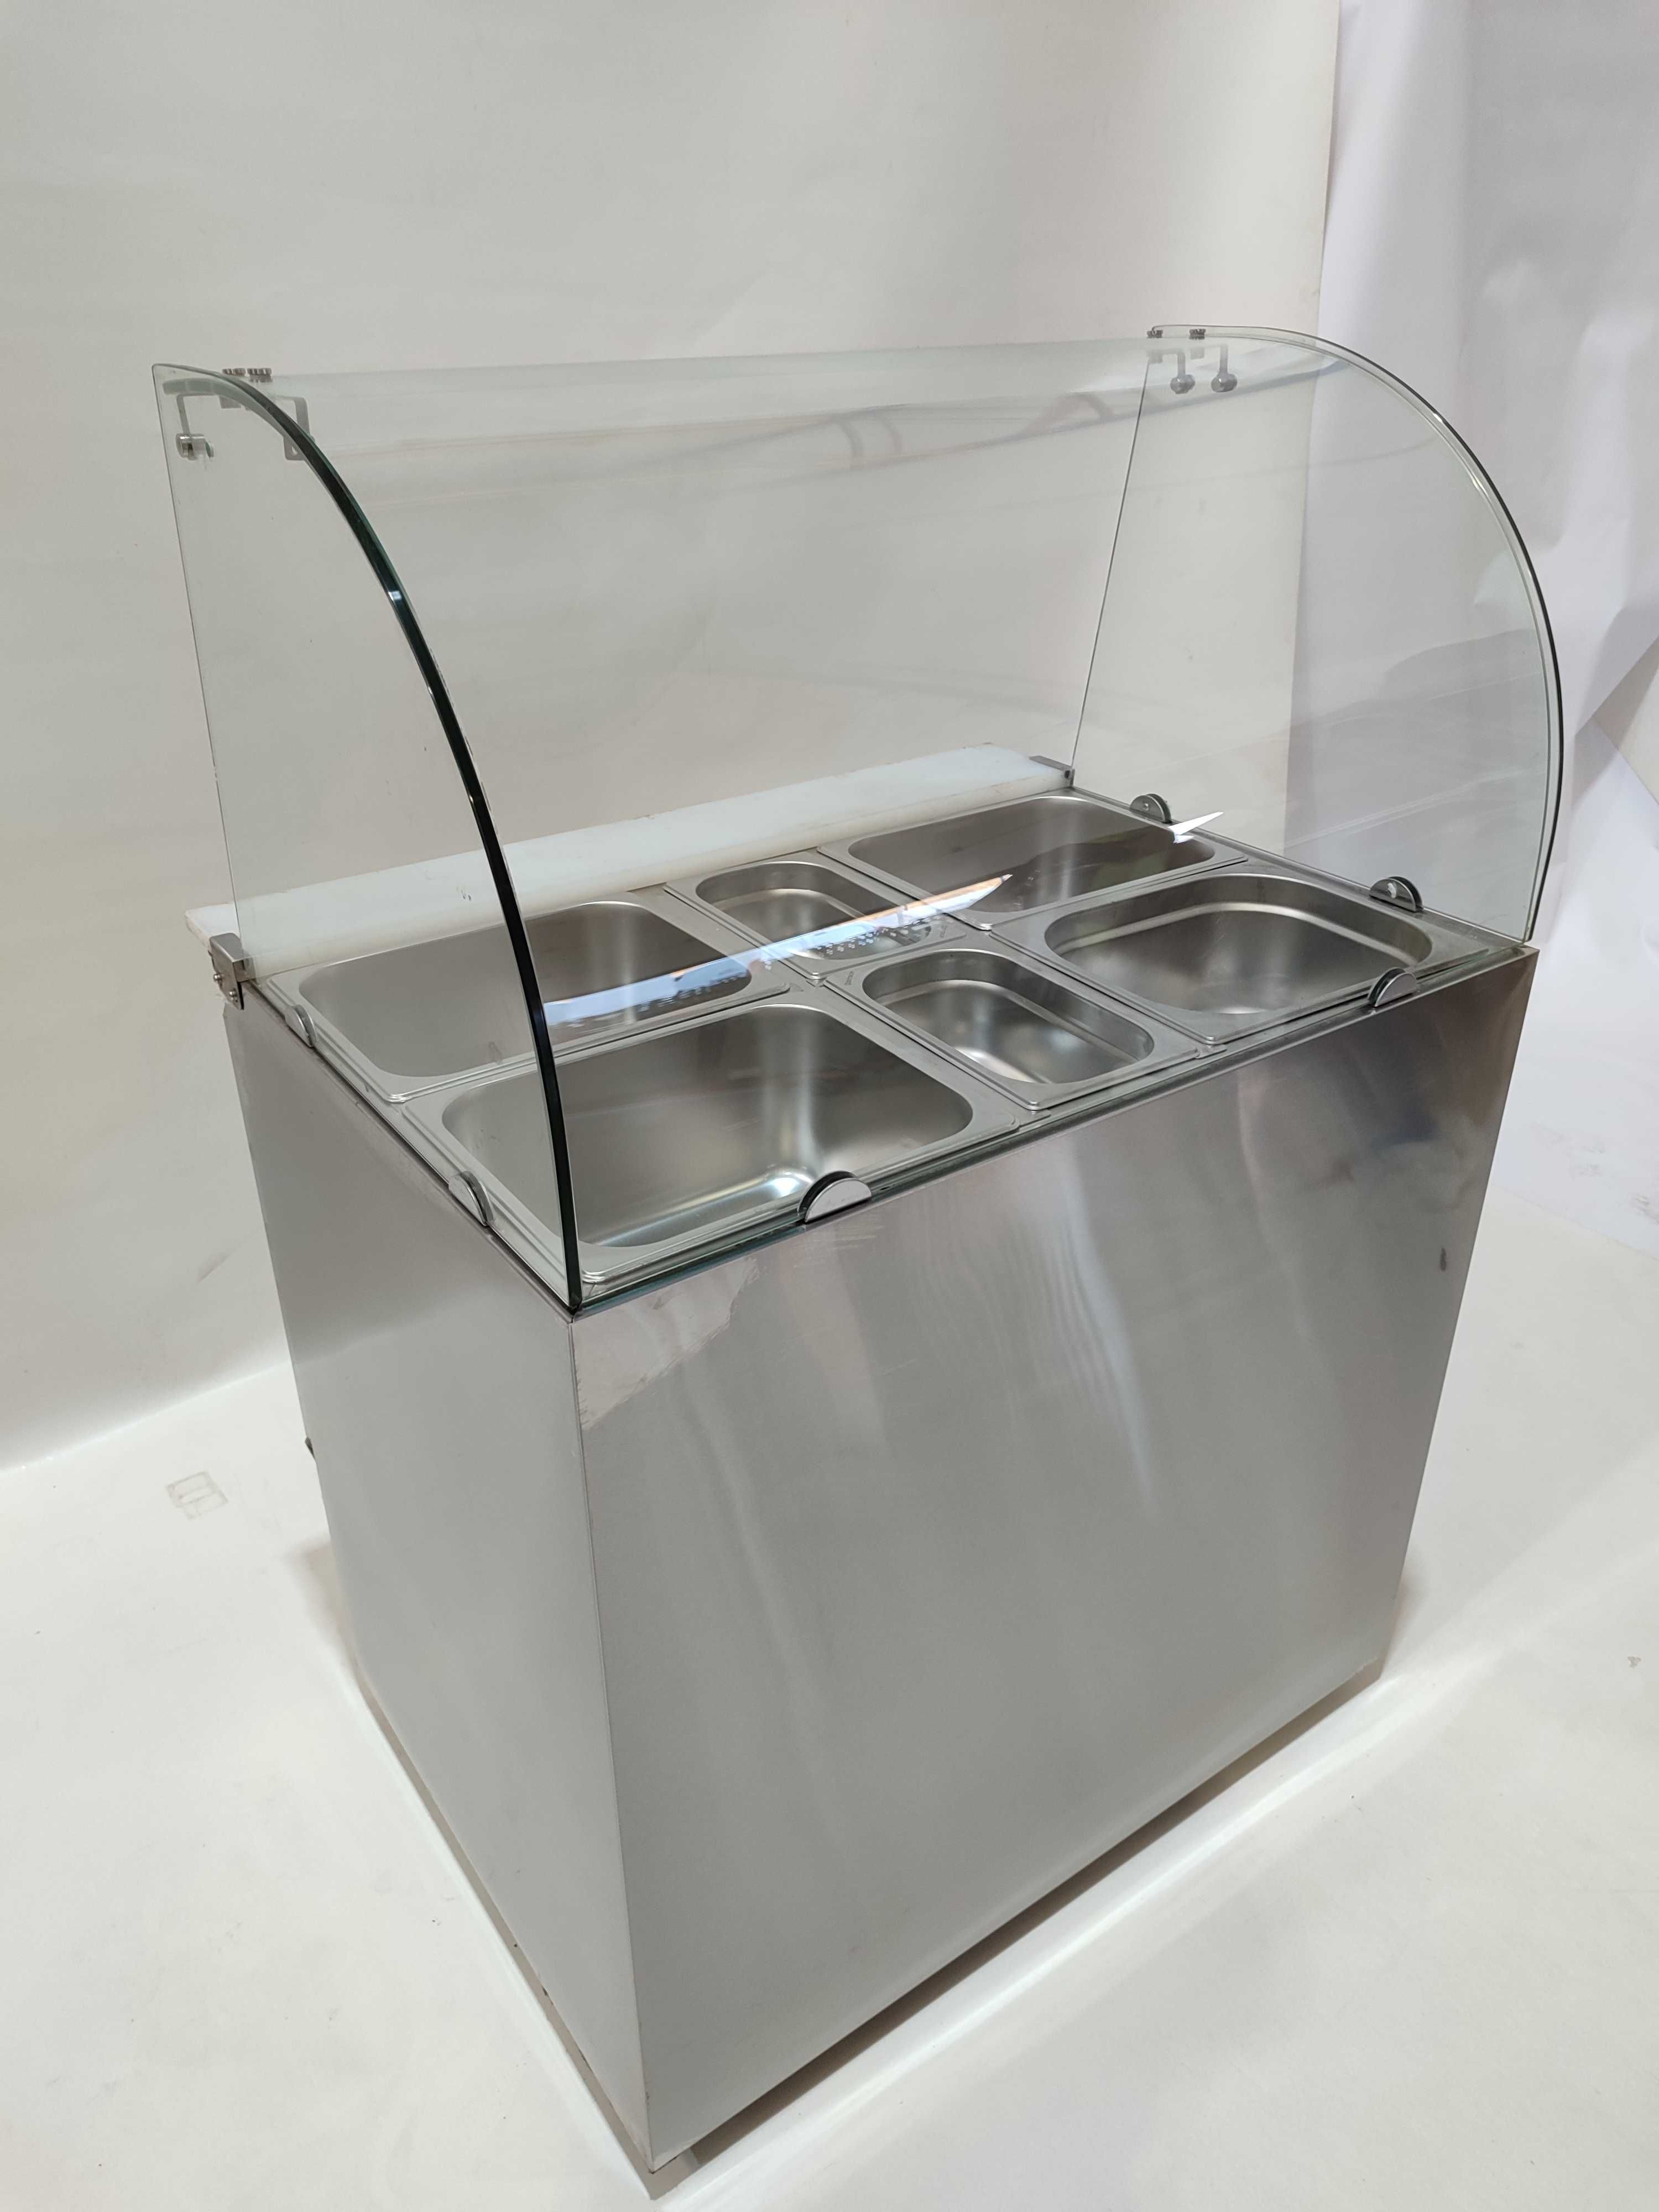 Bancada refrigerada com expositor vidro em inox